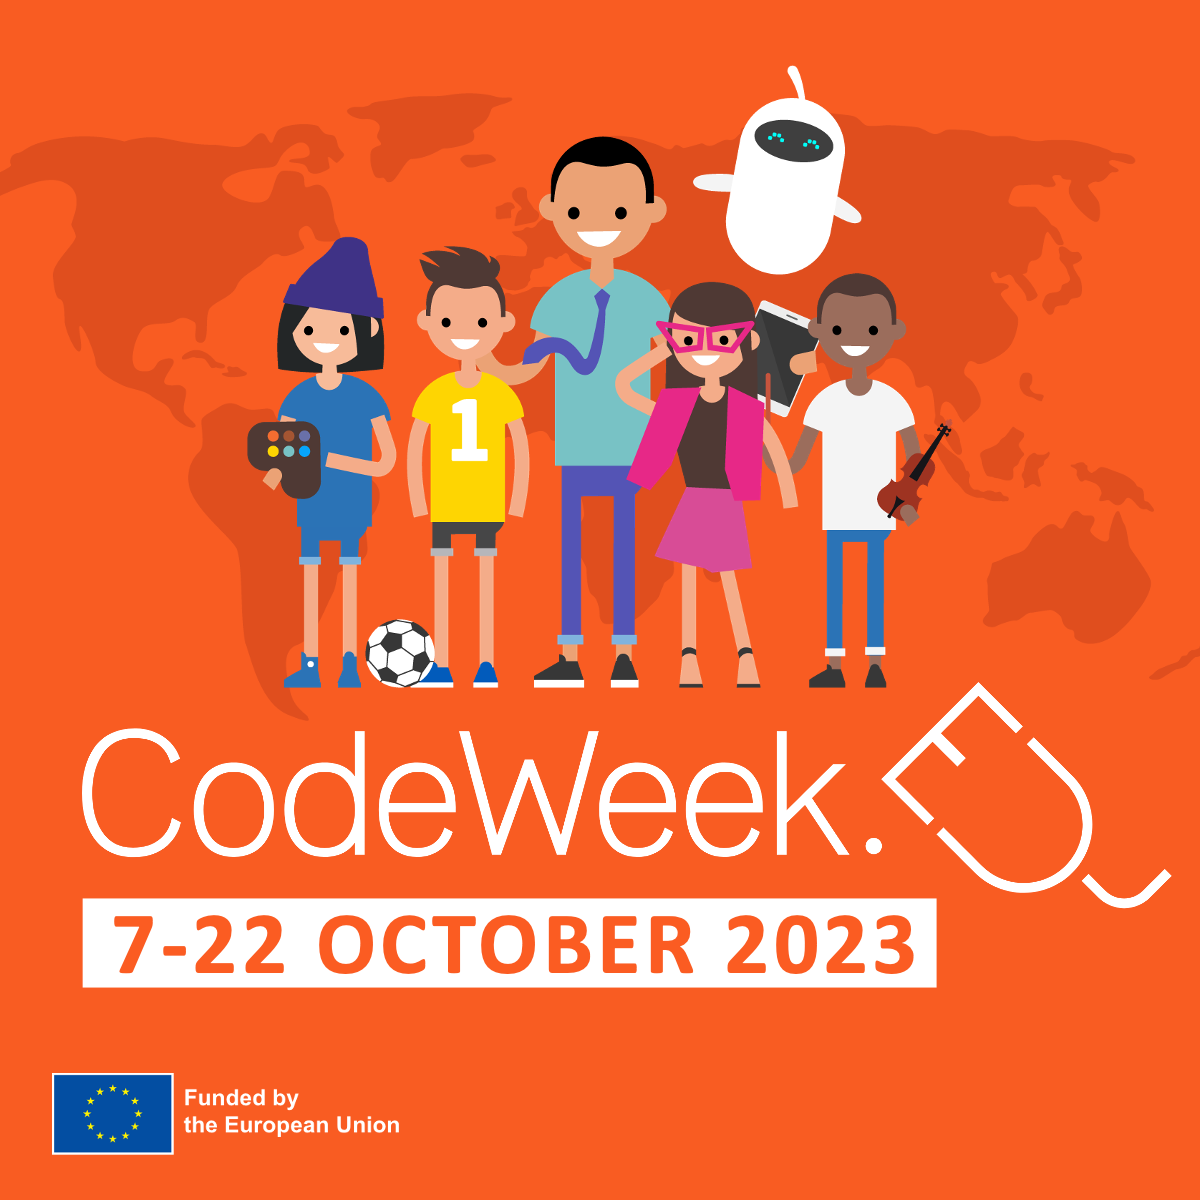 #CODEWEEK CODE WEEK, CZYLI EUROPEJSKI TYDZIEŃ KODOWANIA 7-22.10.2023